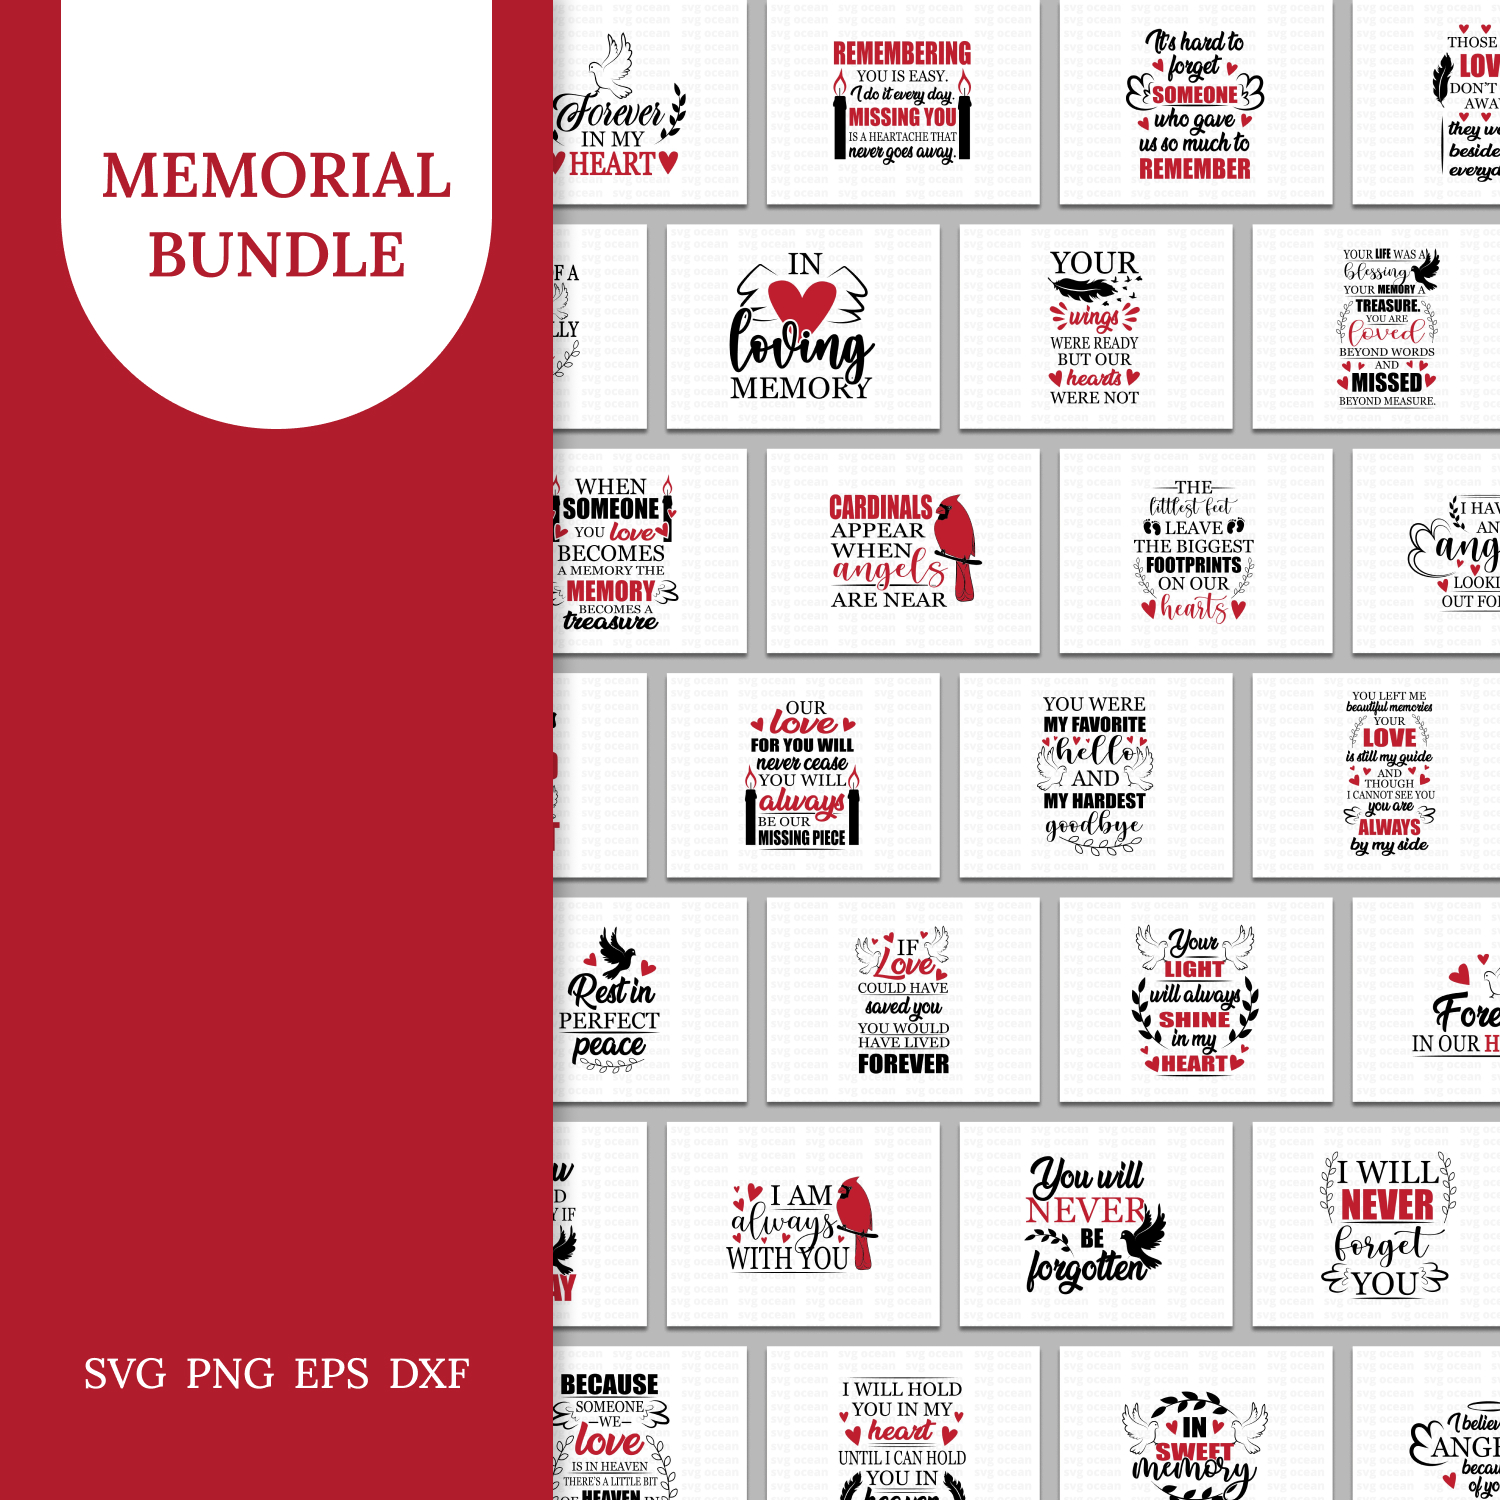 Memorial bundle prints preview.